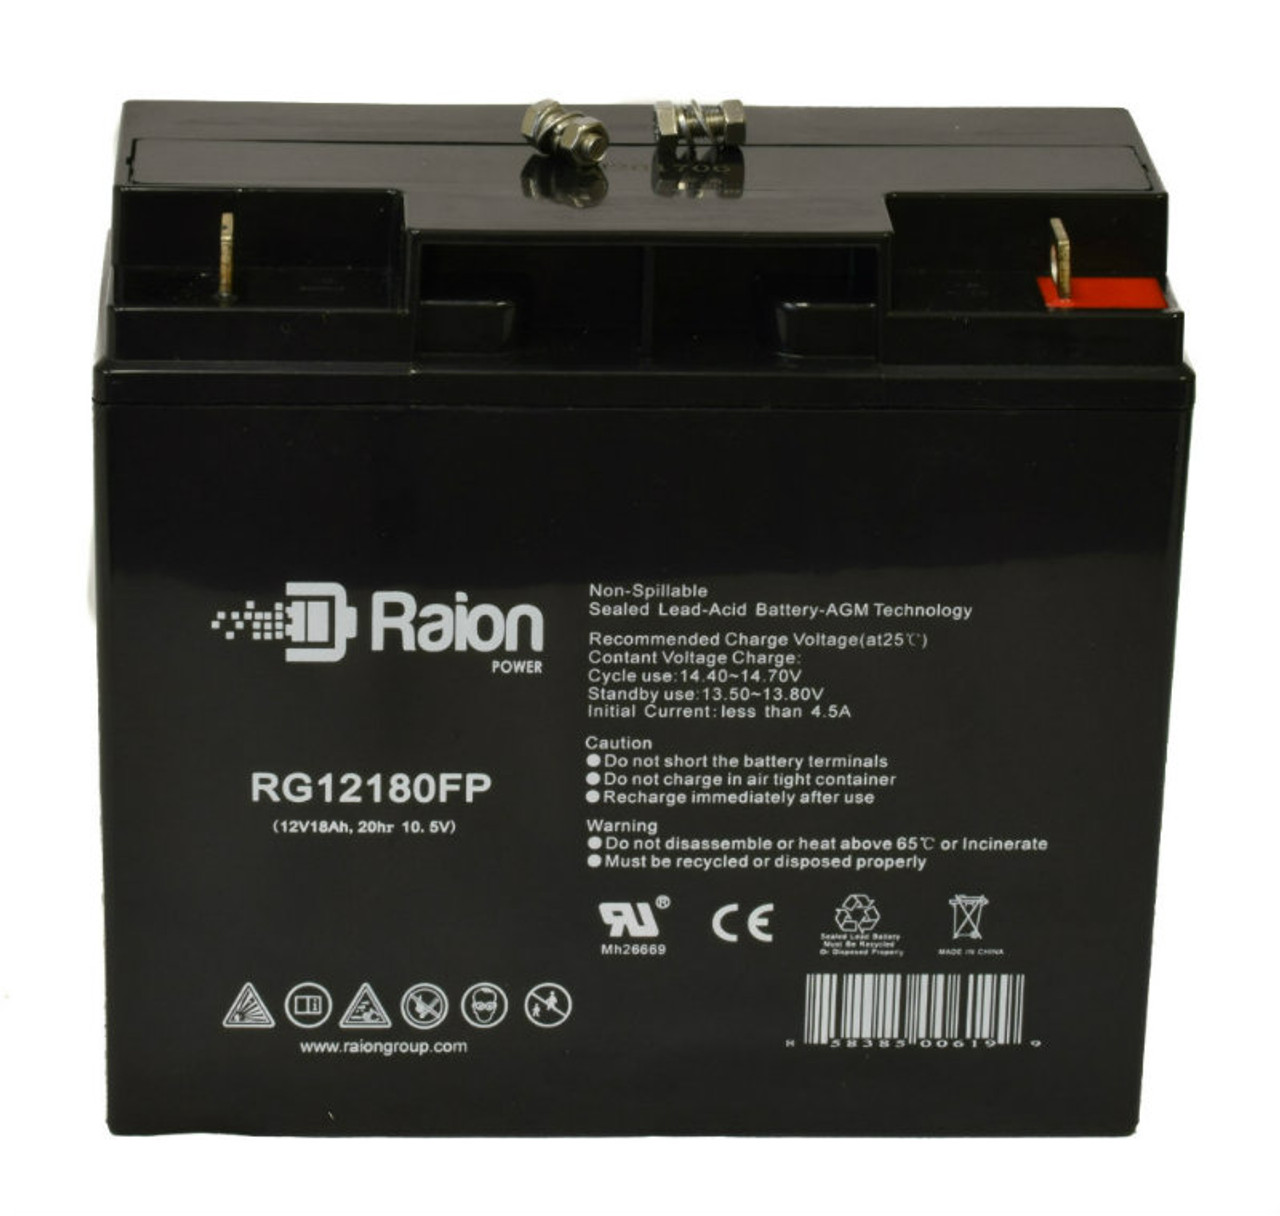 Raion Power RG12180FP 12V 18Ah Lead Acid Battery for Tempest TR17-12